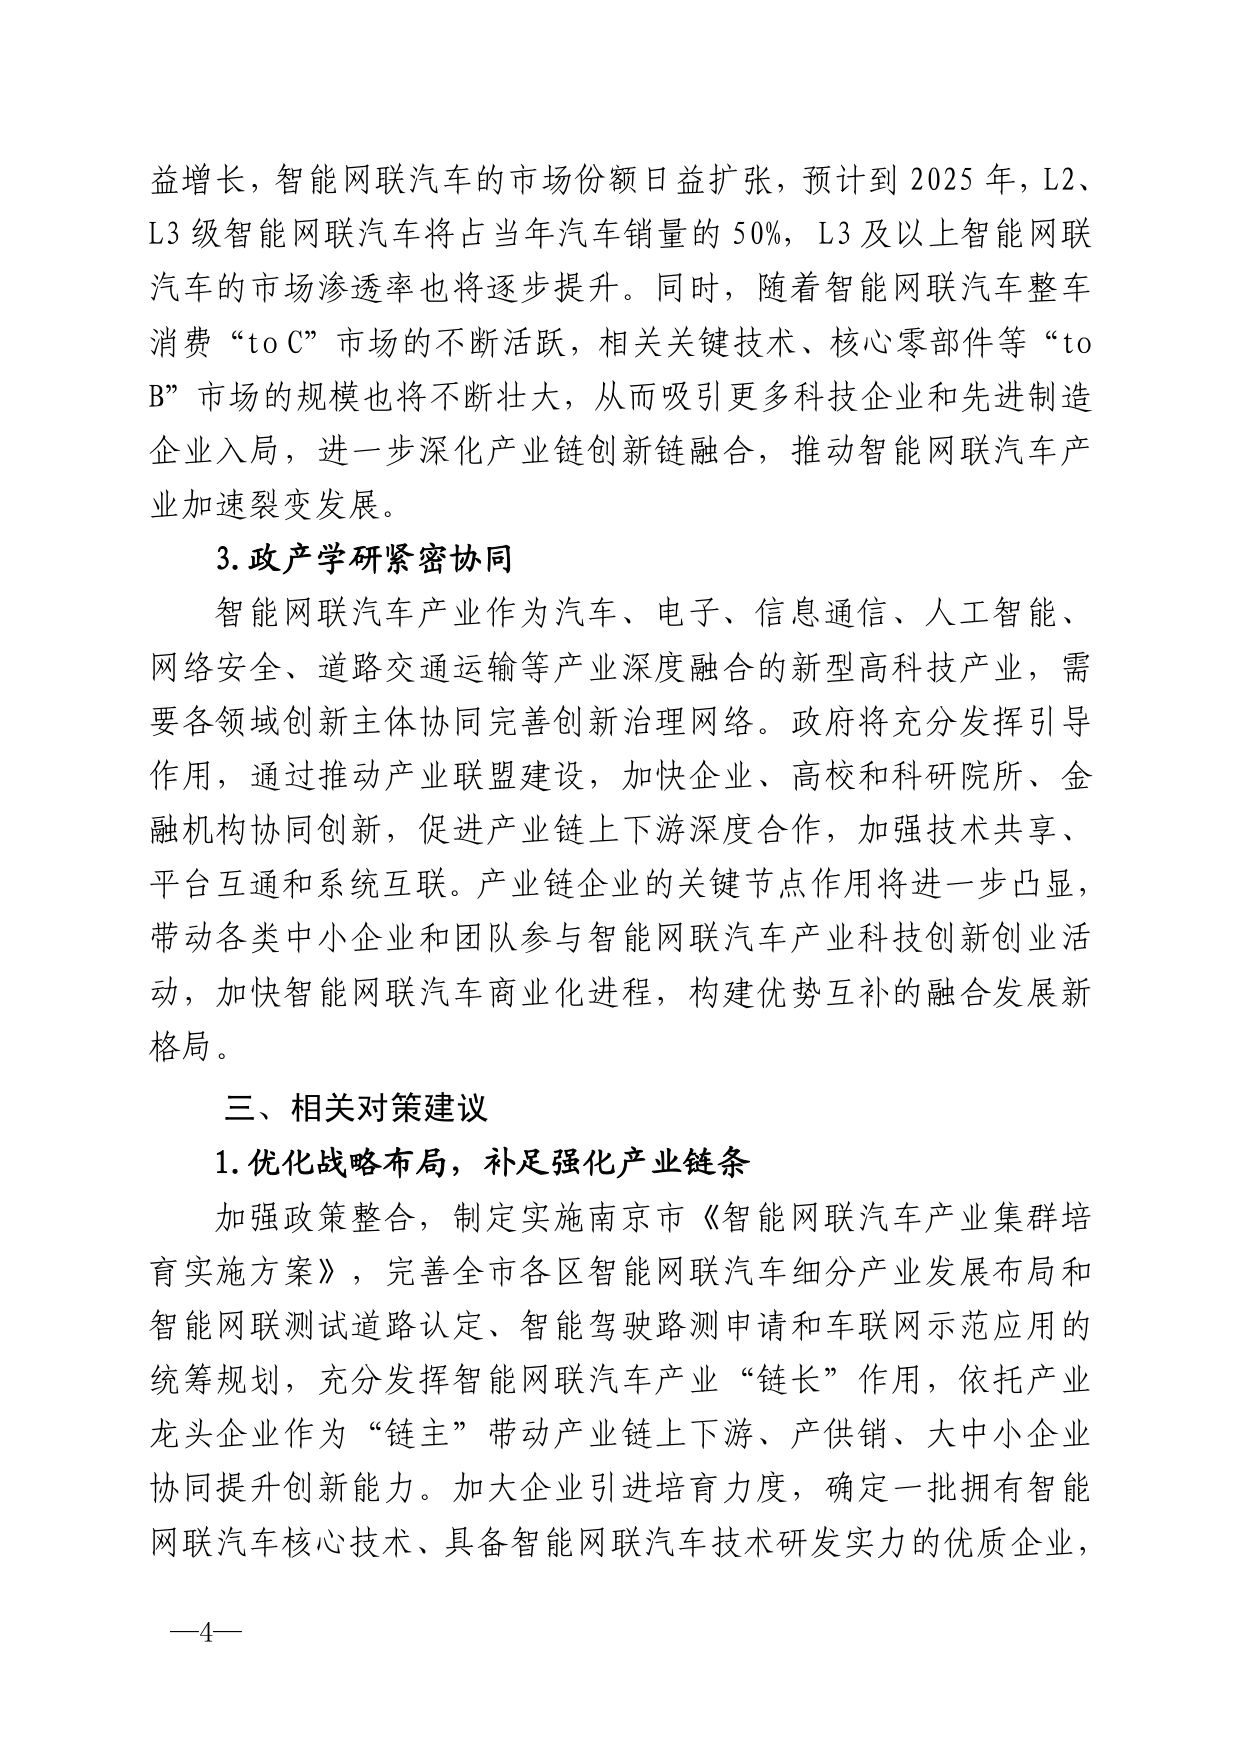 2021年第4期（关于南京智能网联汽车产业高质量发展建议）_page-0004.jpg